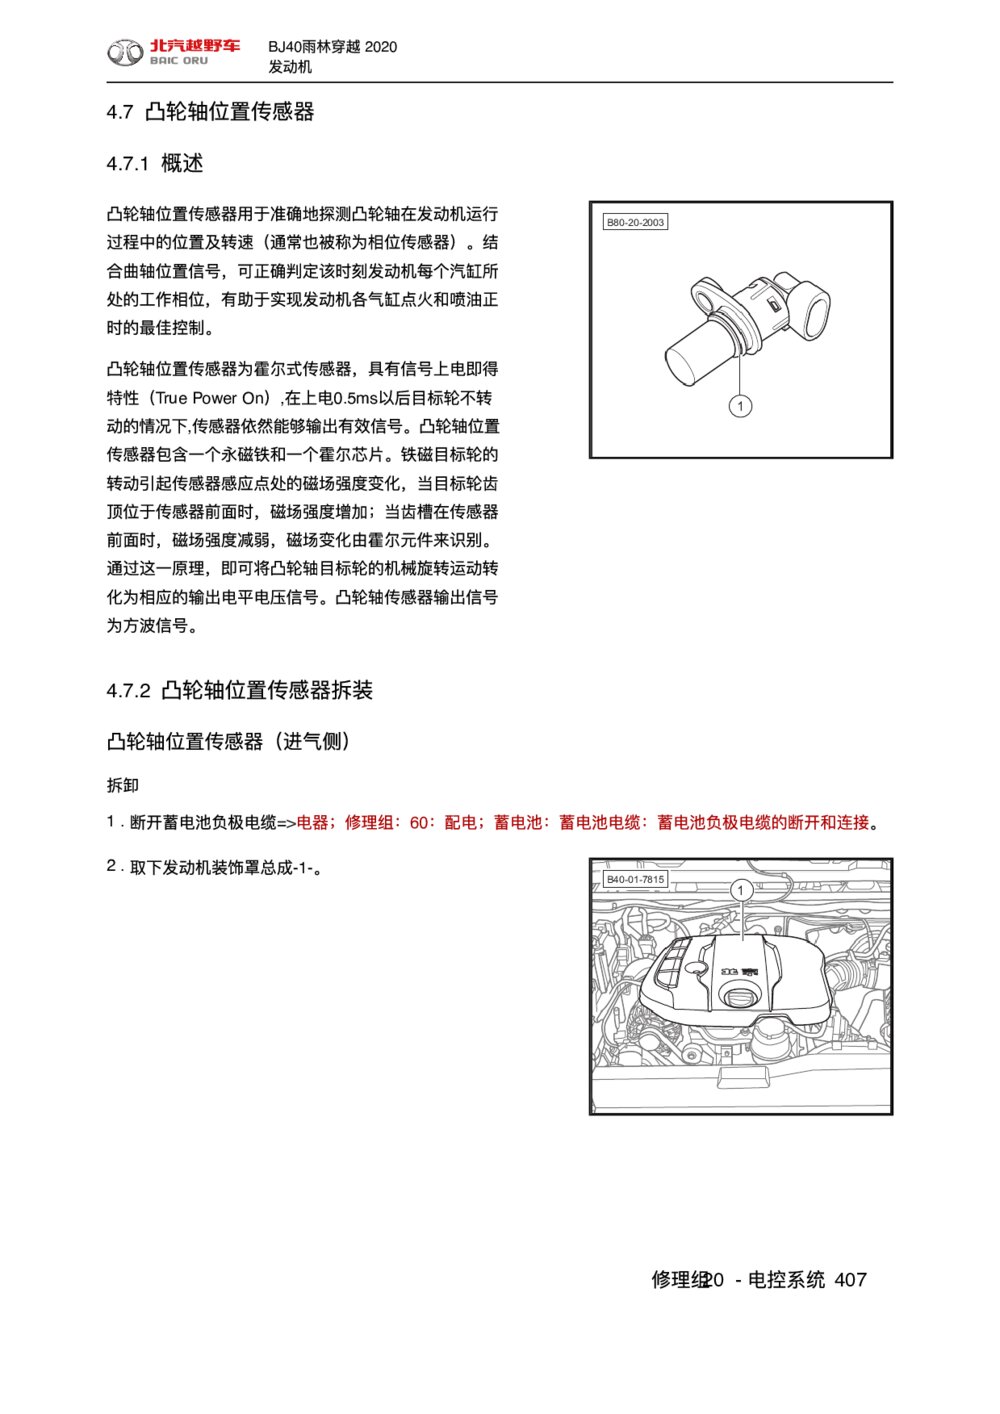 2020款北京BJ40雨林穿越版凸轮轴位置传感器手册1